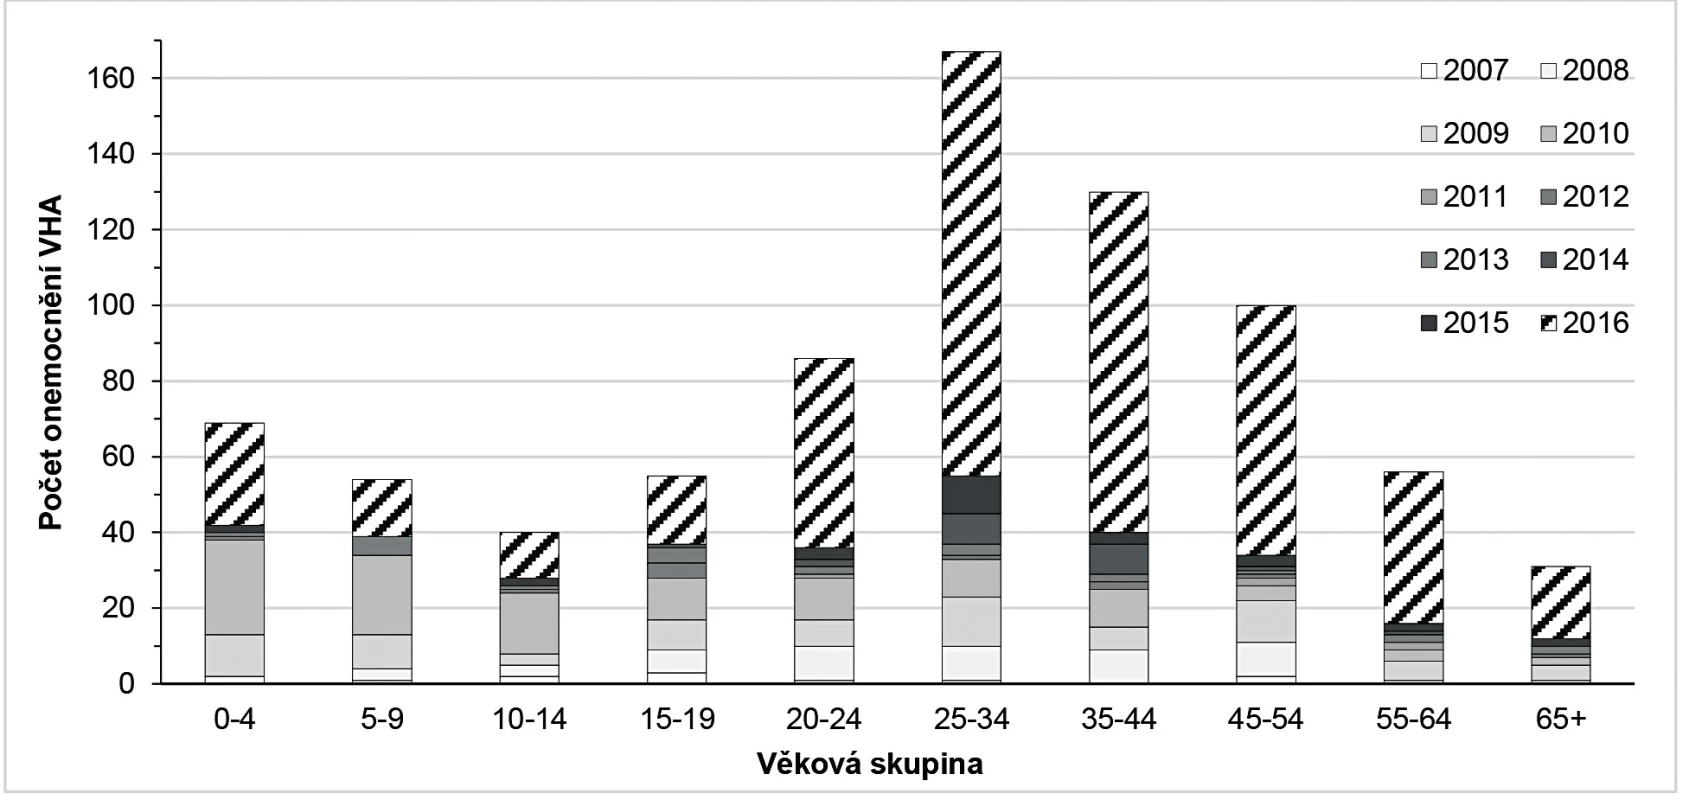 Výskyt VHA podle věkových skupin v JMK v letech 2006–2016
Figure 2. VHA by age group in the South Moravian Region in 2006–2016